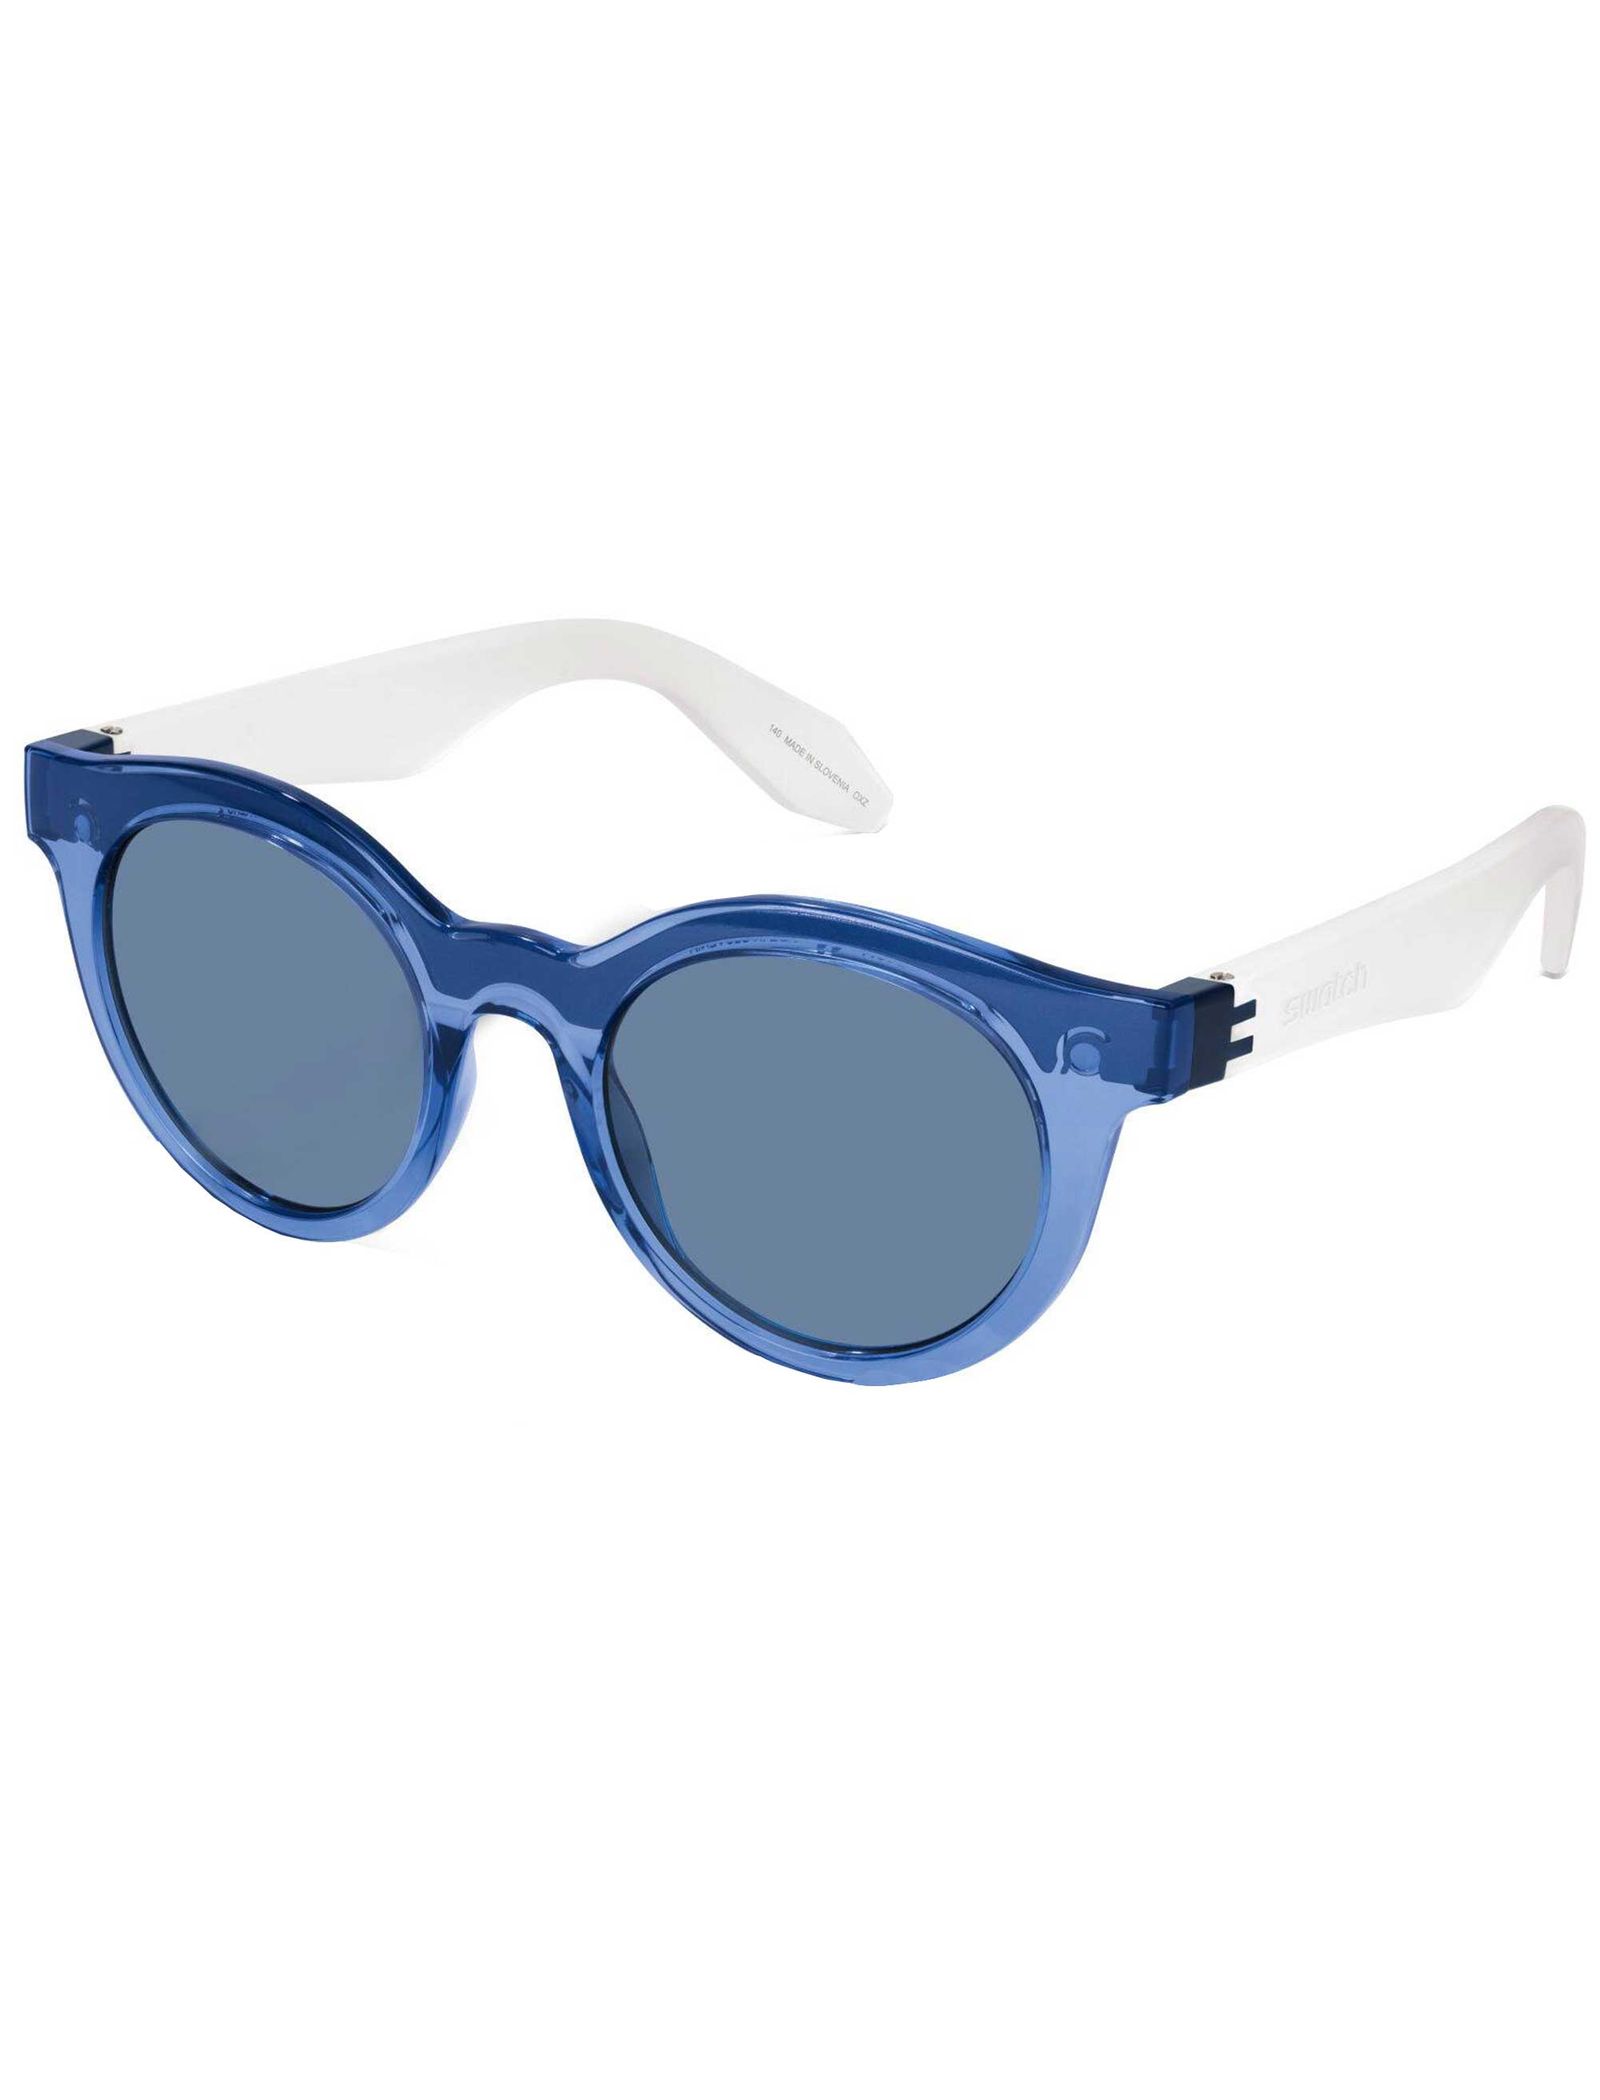 عینک آفتابی سواچ مدل SES01RMV033 - آبی - 3